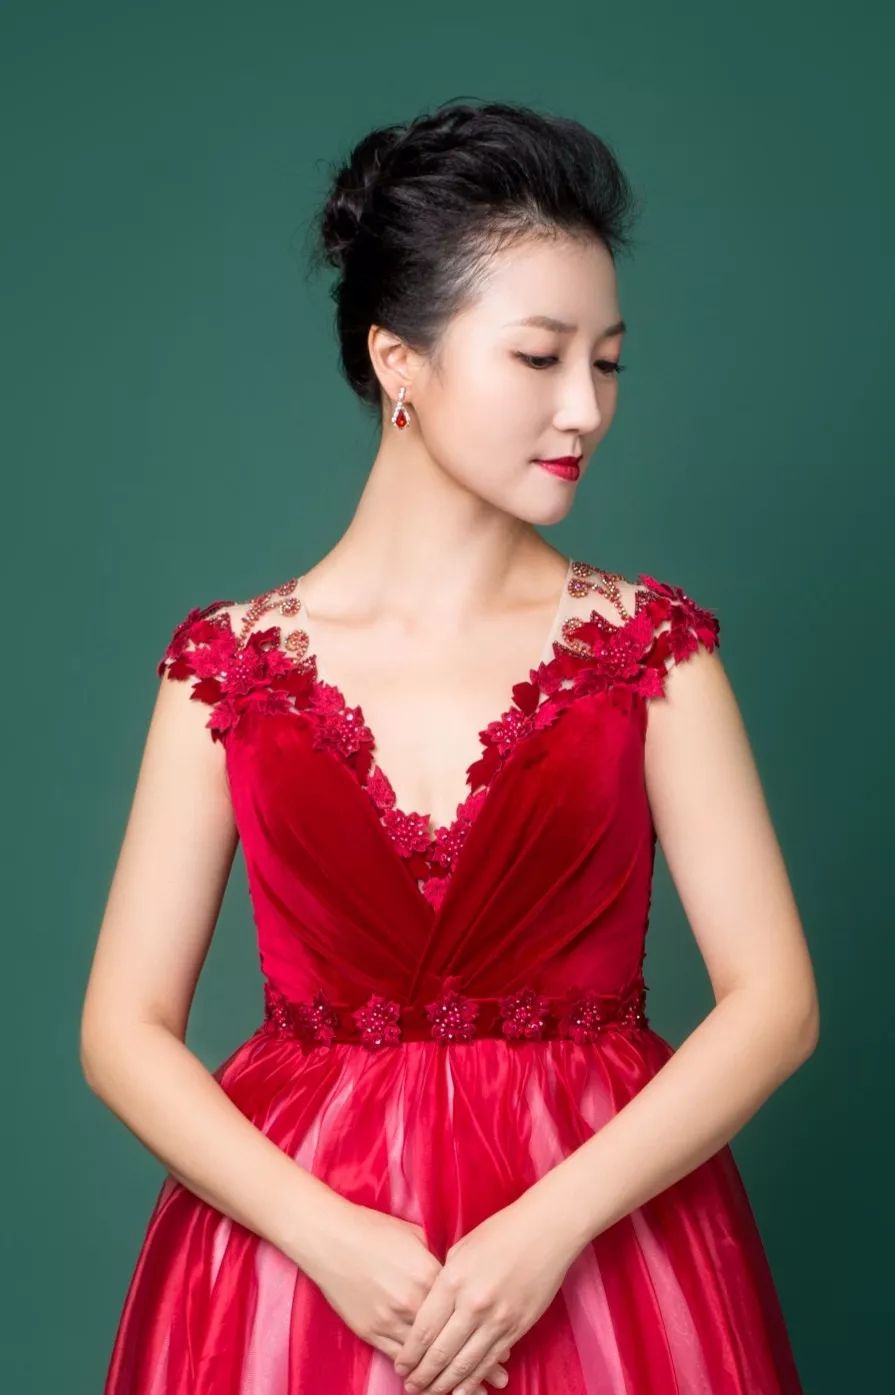 #演出預告#中國交響樂團12月演出預告